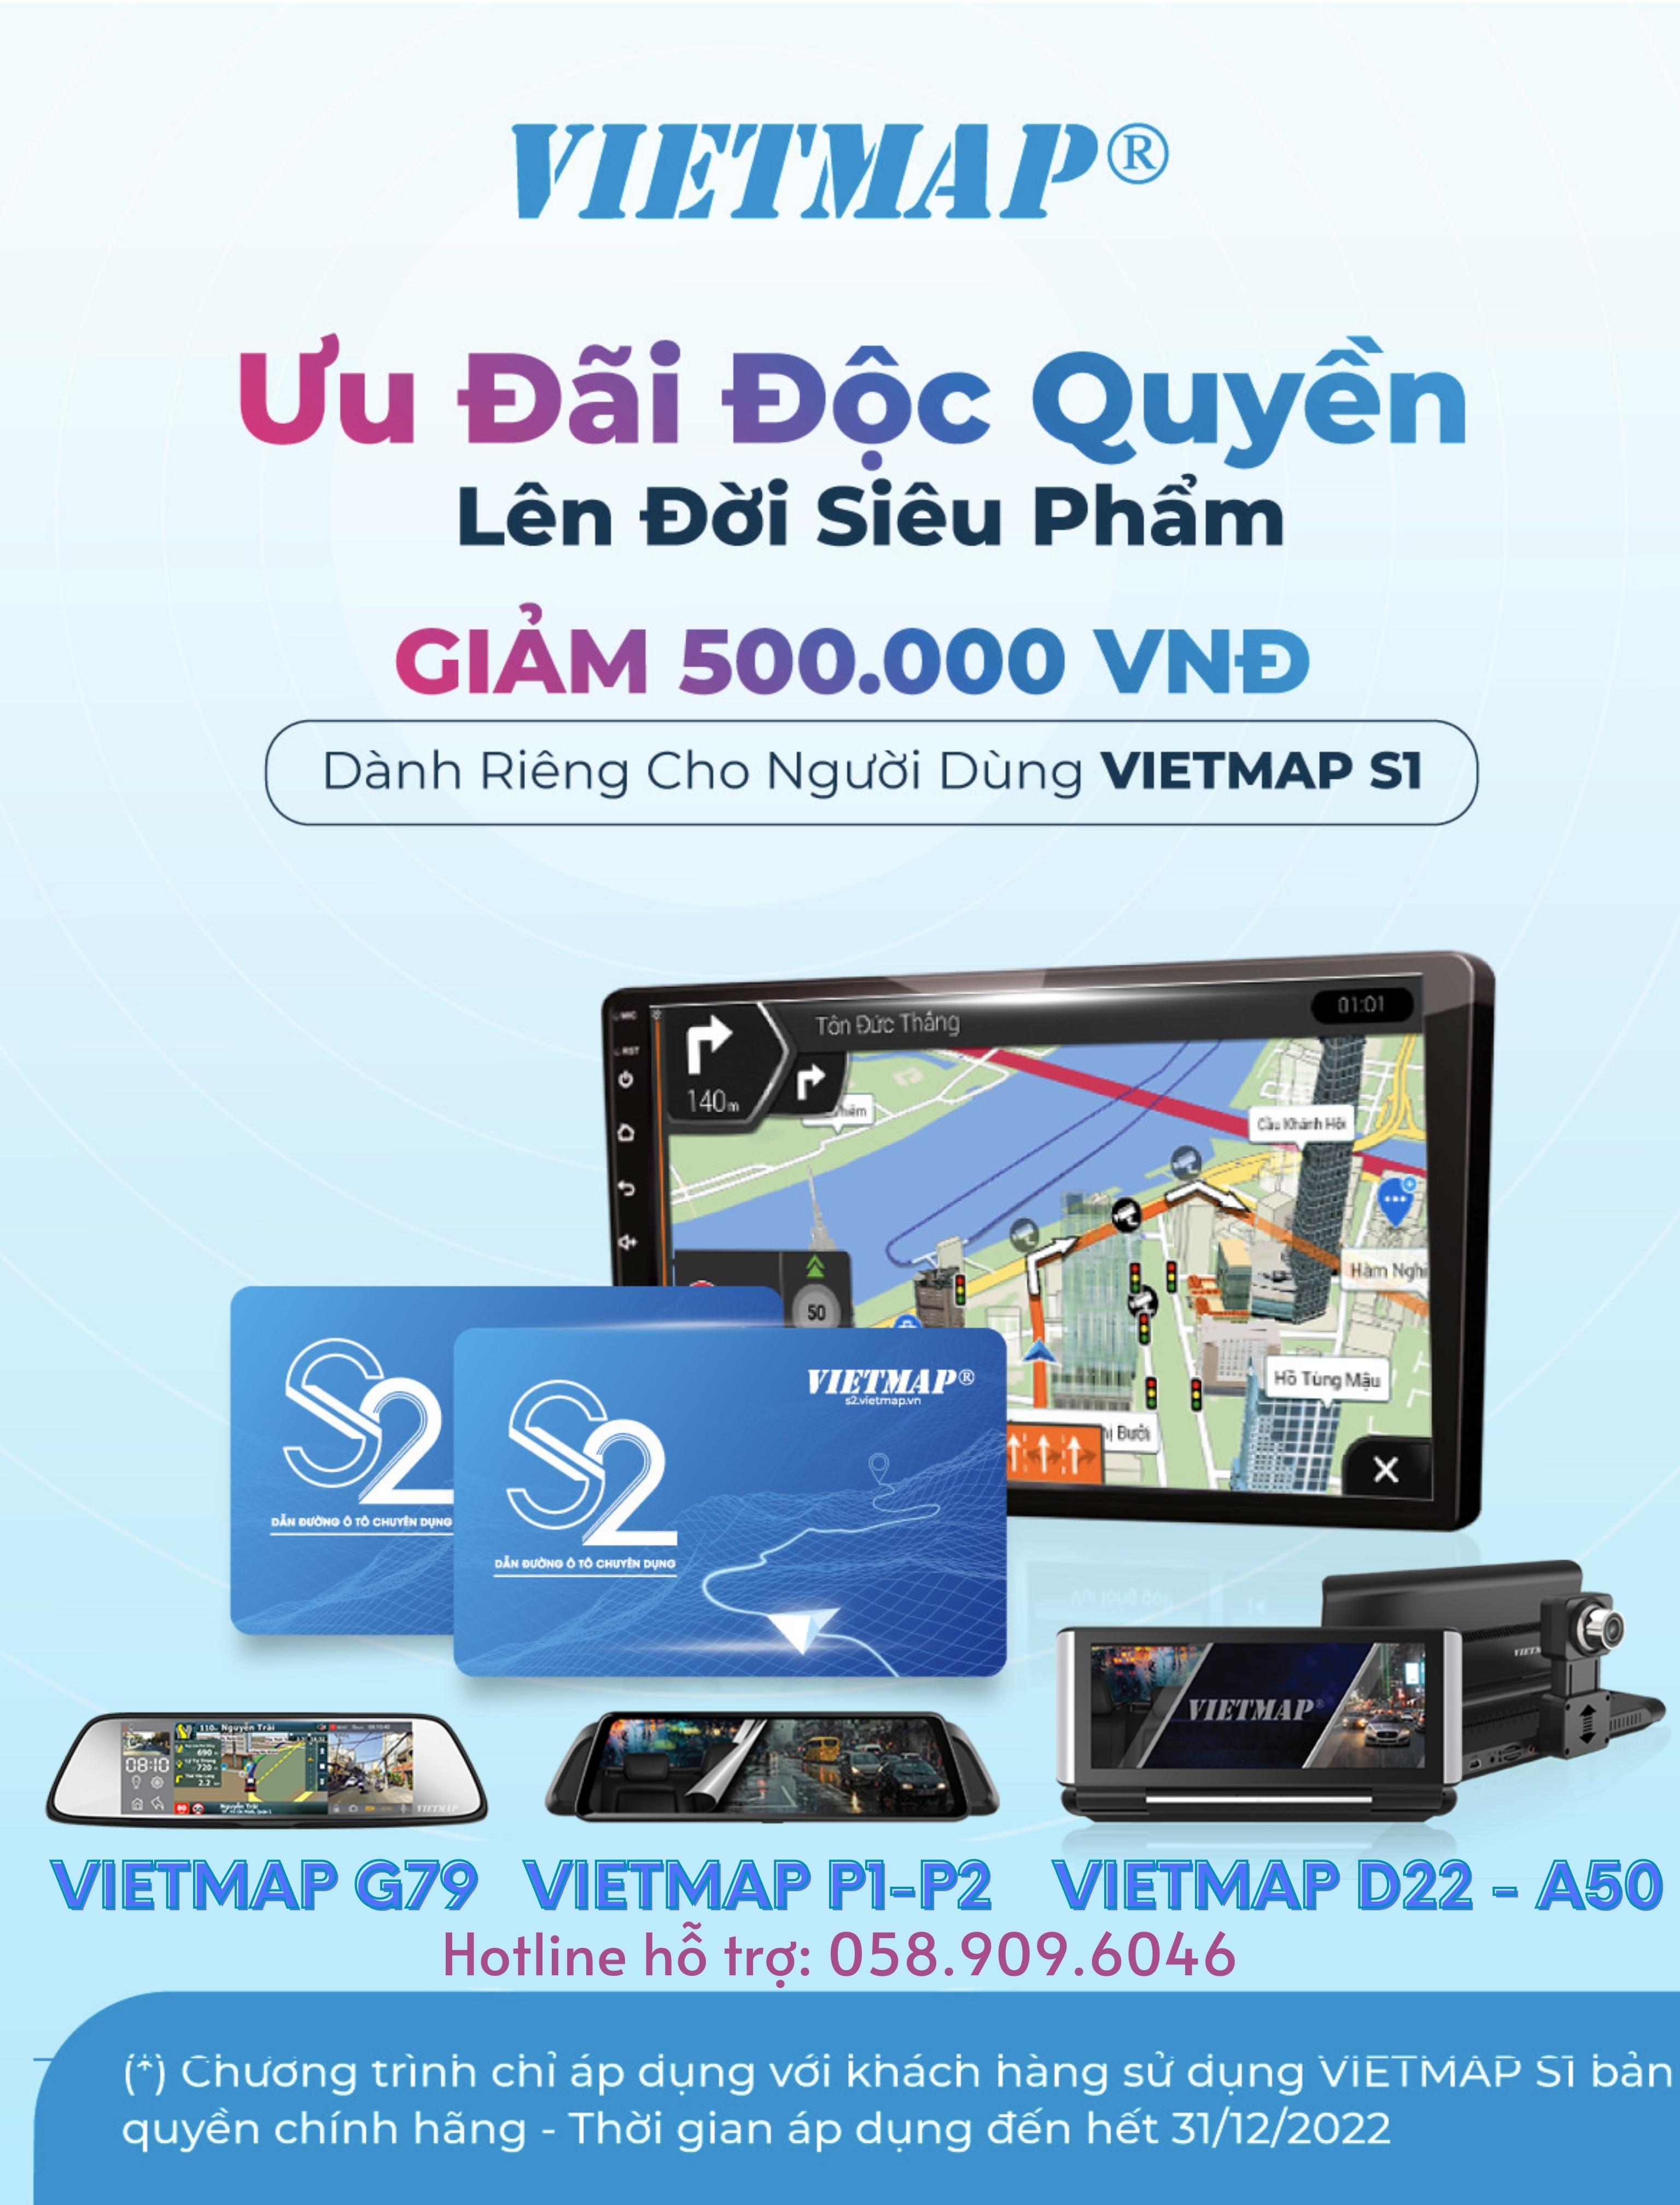 Hộp mã VIETMAP S2 Phần mềm dẫn đường Ô tô chuyên dụng Dành Riêng Cho Tài Xế Việt - HÀNG...